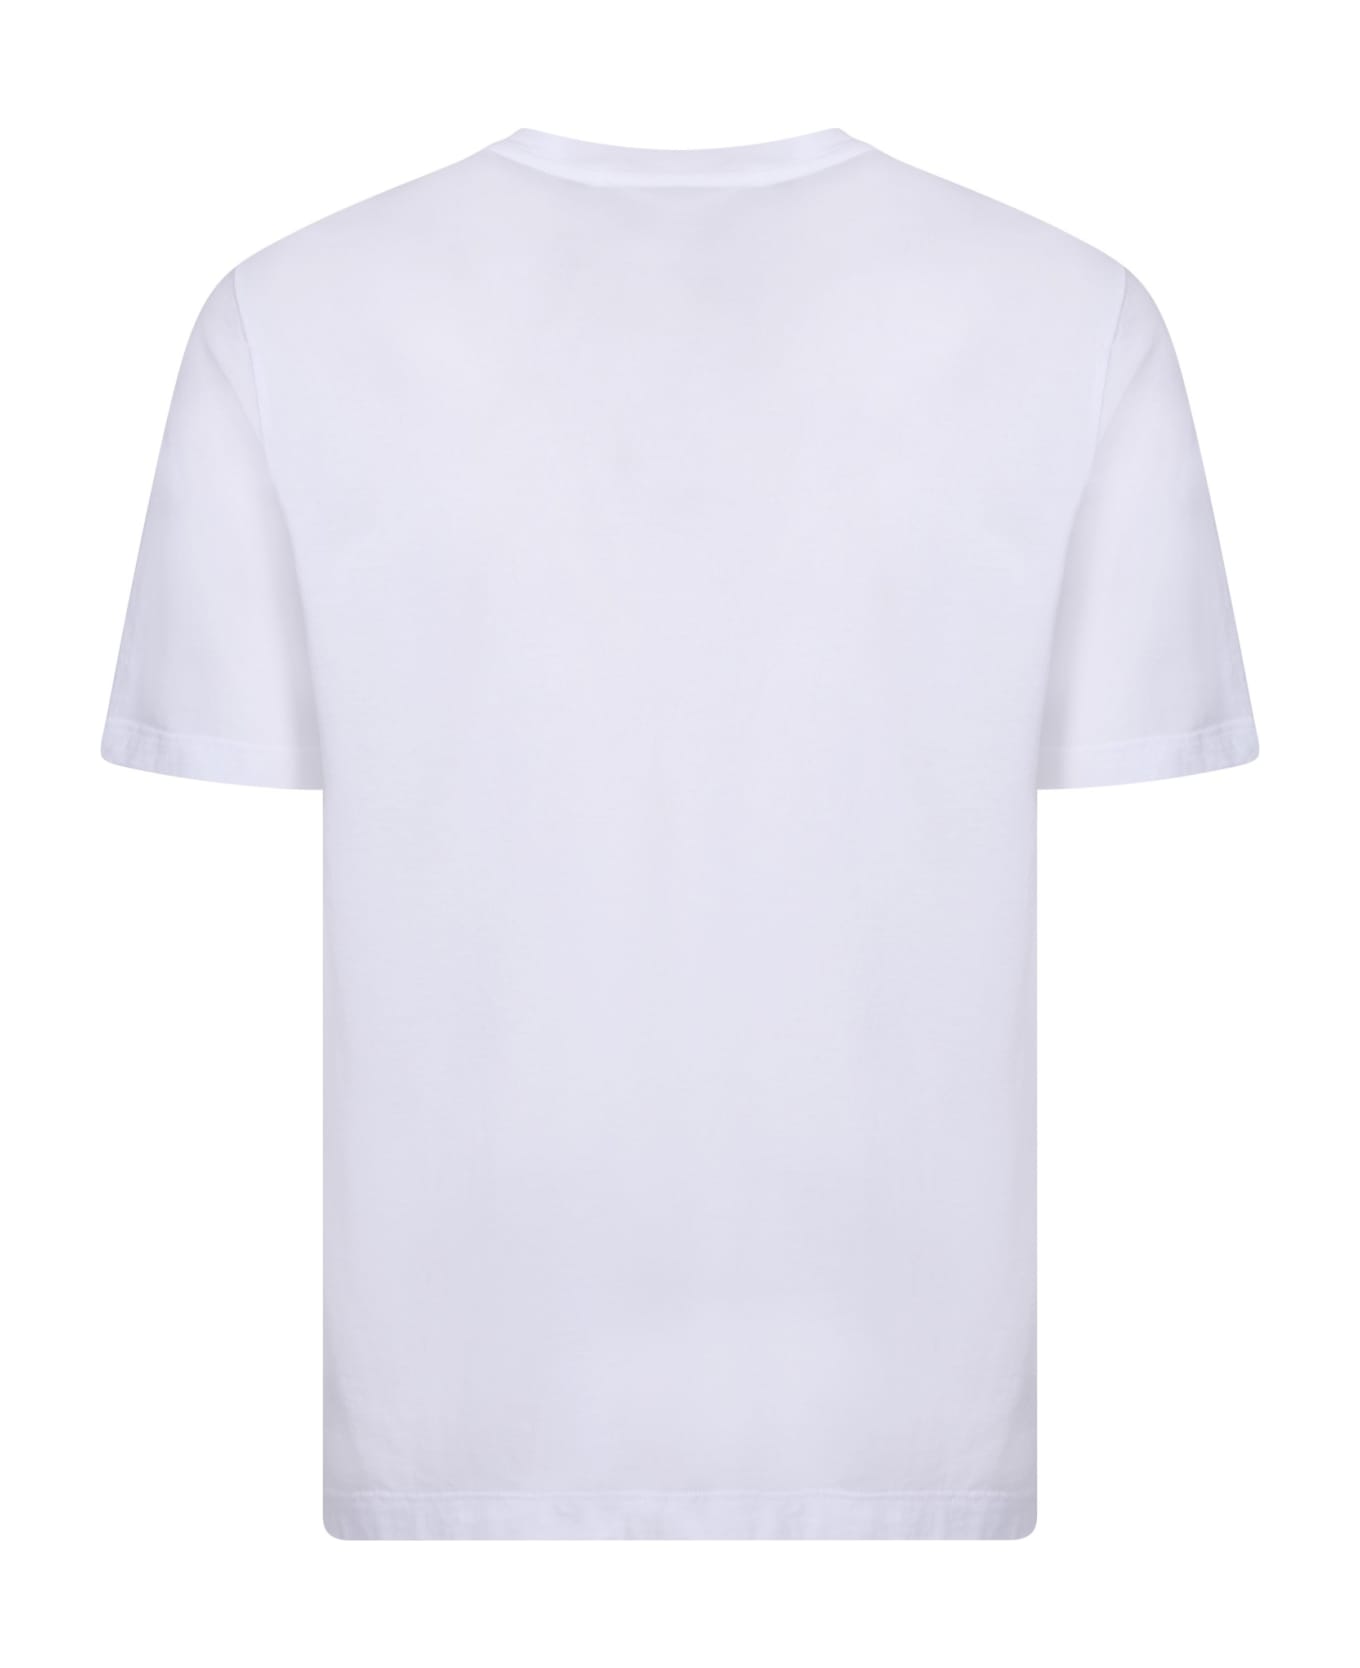 Lardini Cotton T-shirt - White